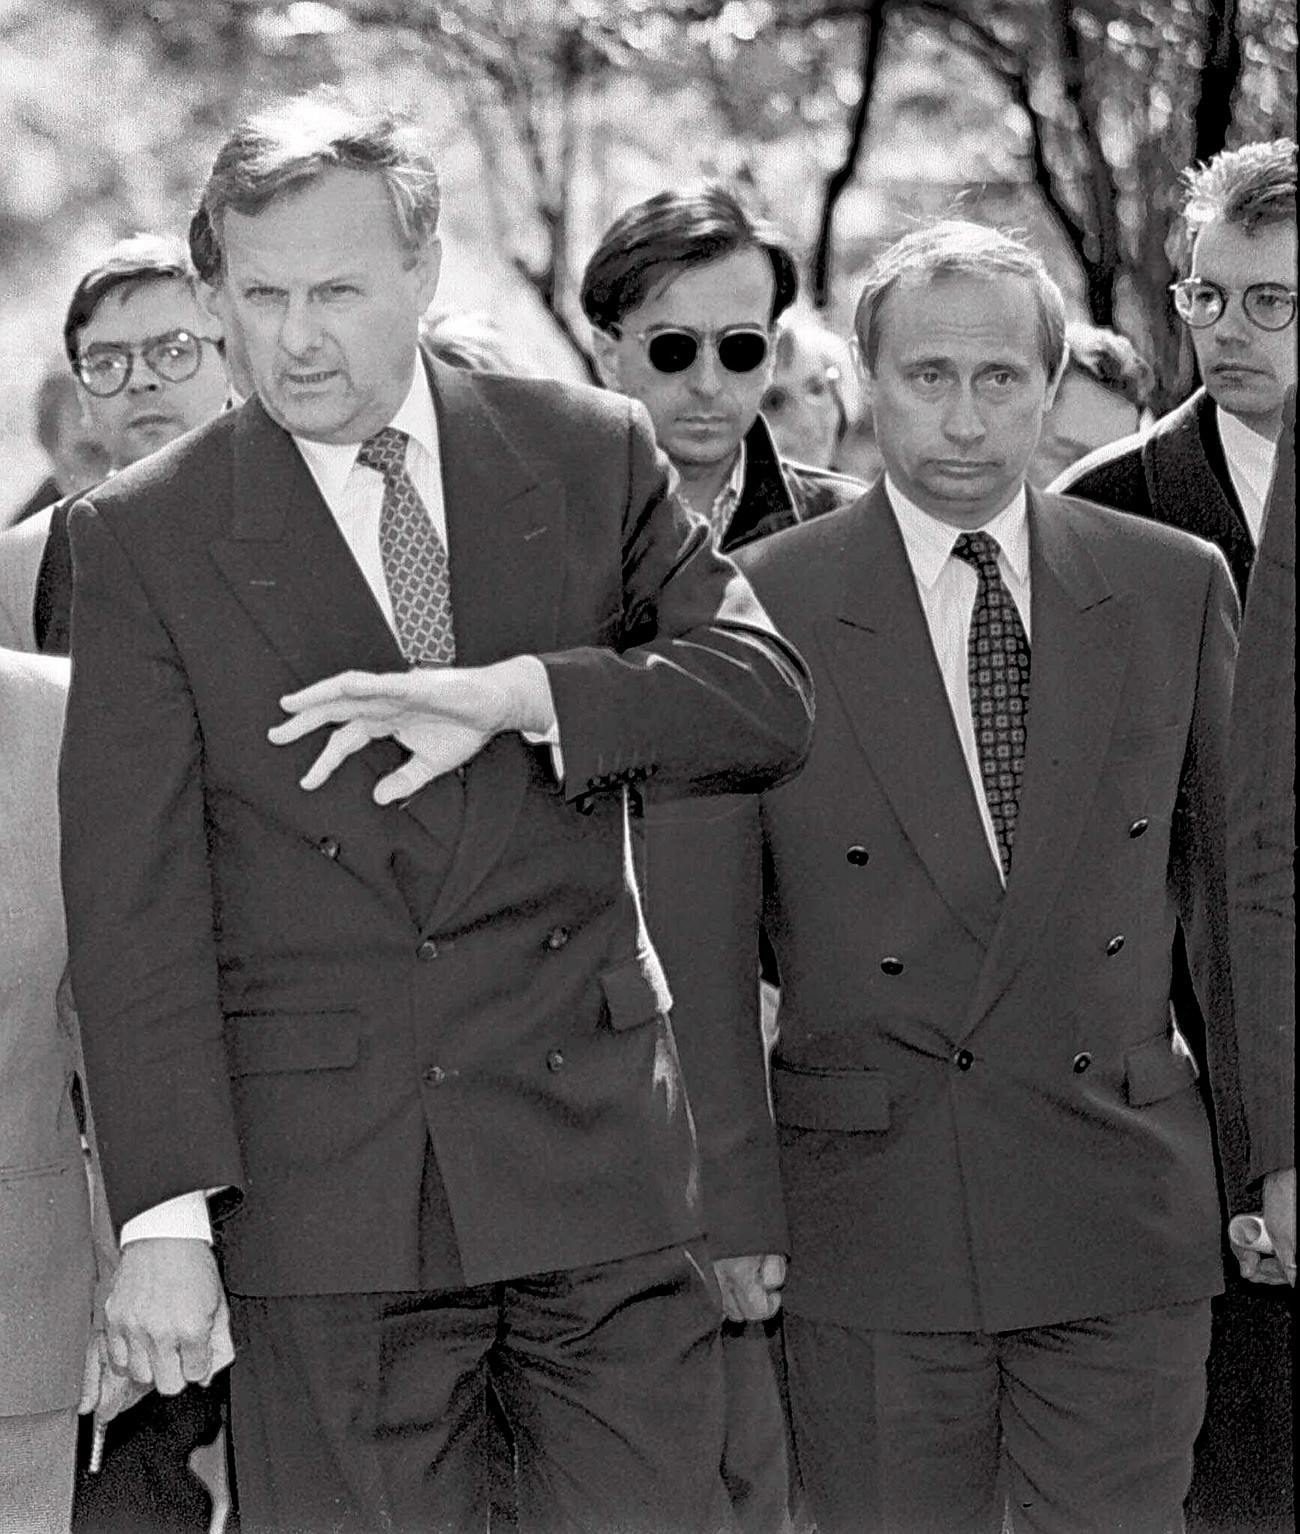 Anatolij Sopčak, gradonačelnik Sankt-Peterburga (lijevo), s Vladimirom Putinom, zamjenikom gradonačelnika, u Sankt-Peterburgu na fotografiji iz 1994. godine.
